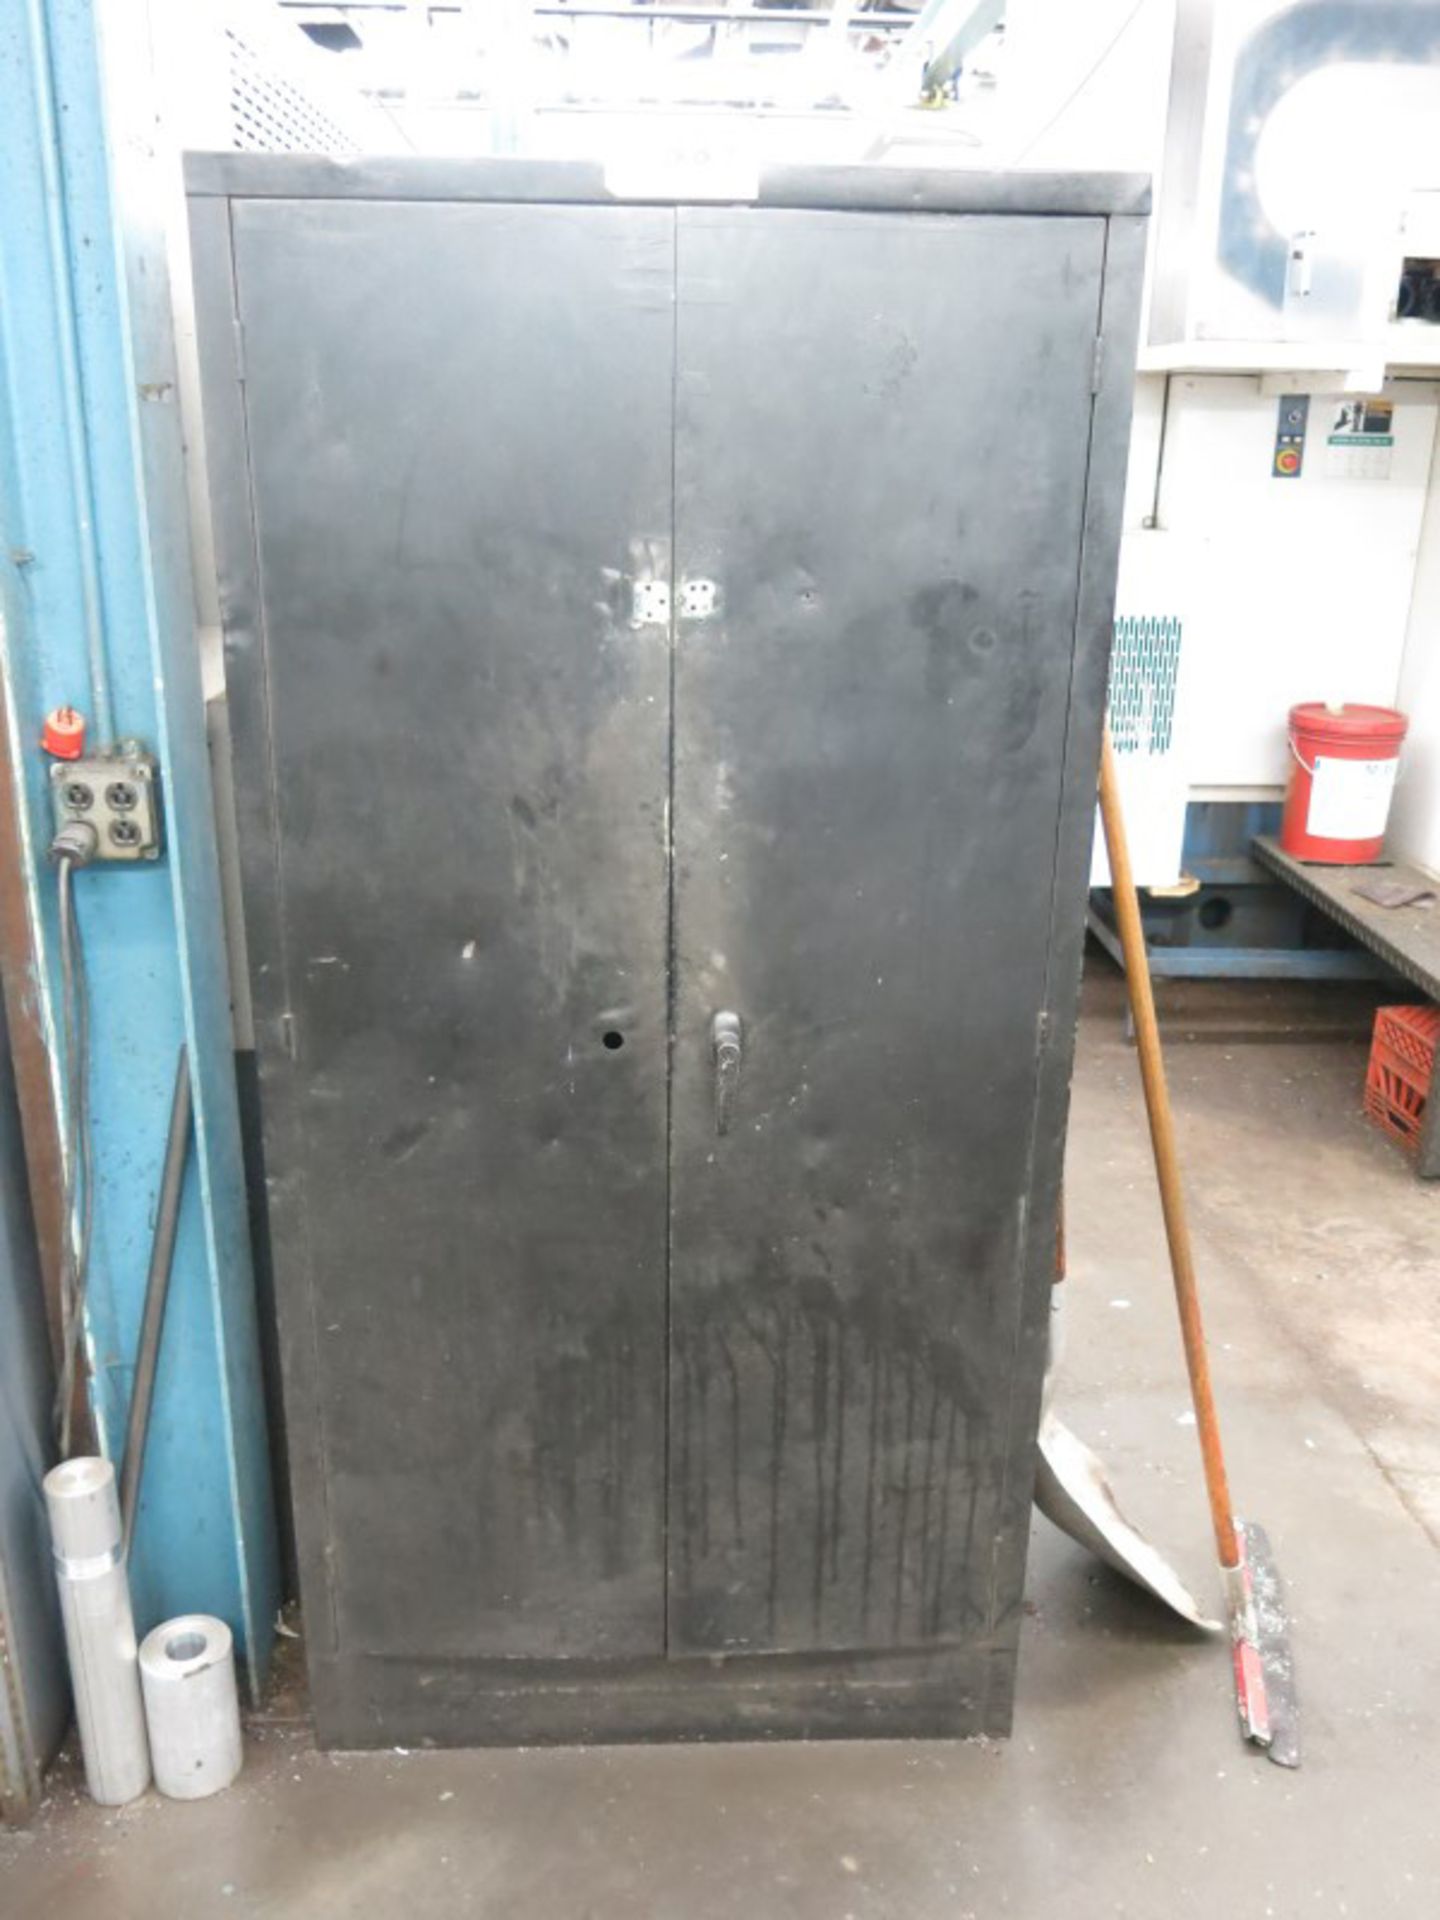 2-Door Metal Cabinet & Shelving Unit w/ Contents - Image 2 of 3